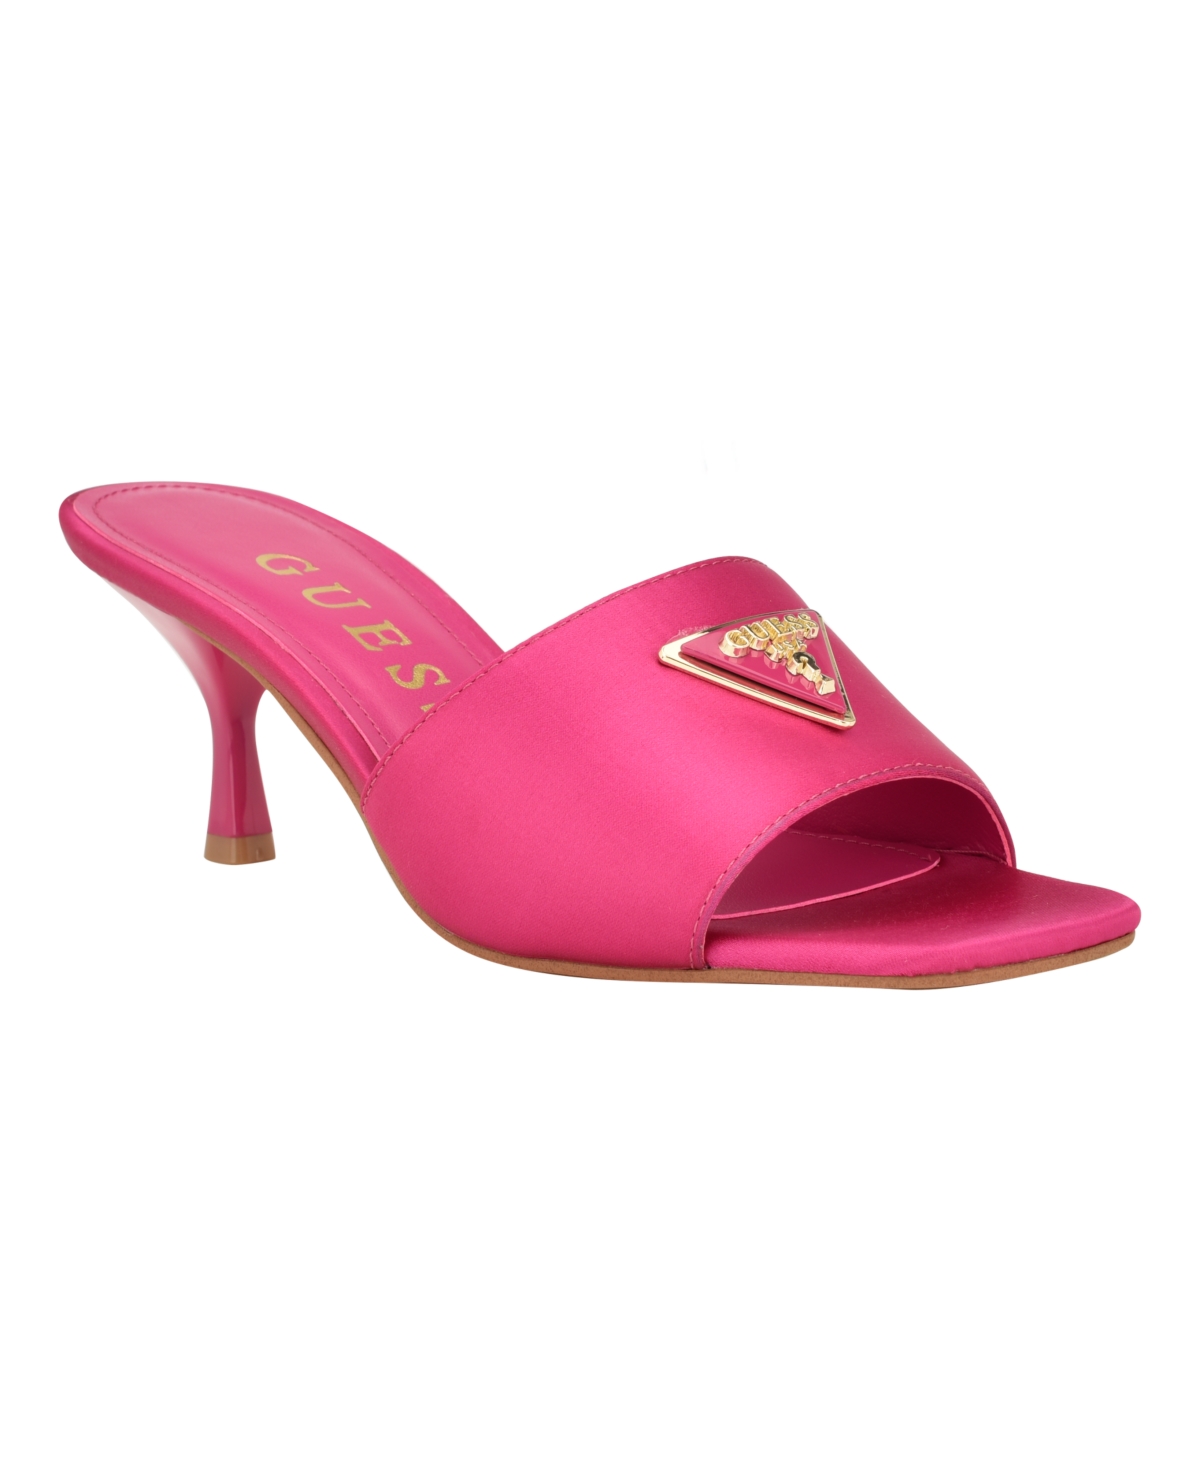 Women's Lusine Slip On Kitten Heel Sandals - Pink Satin- Textile